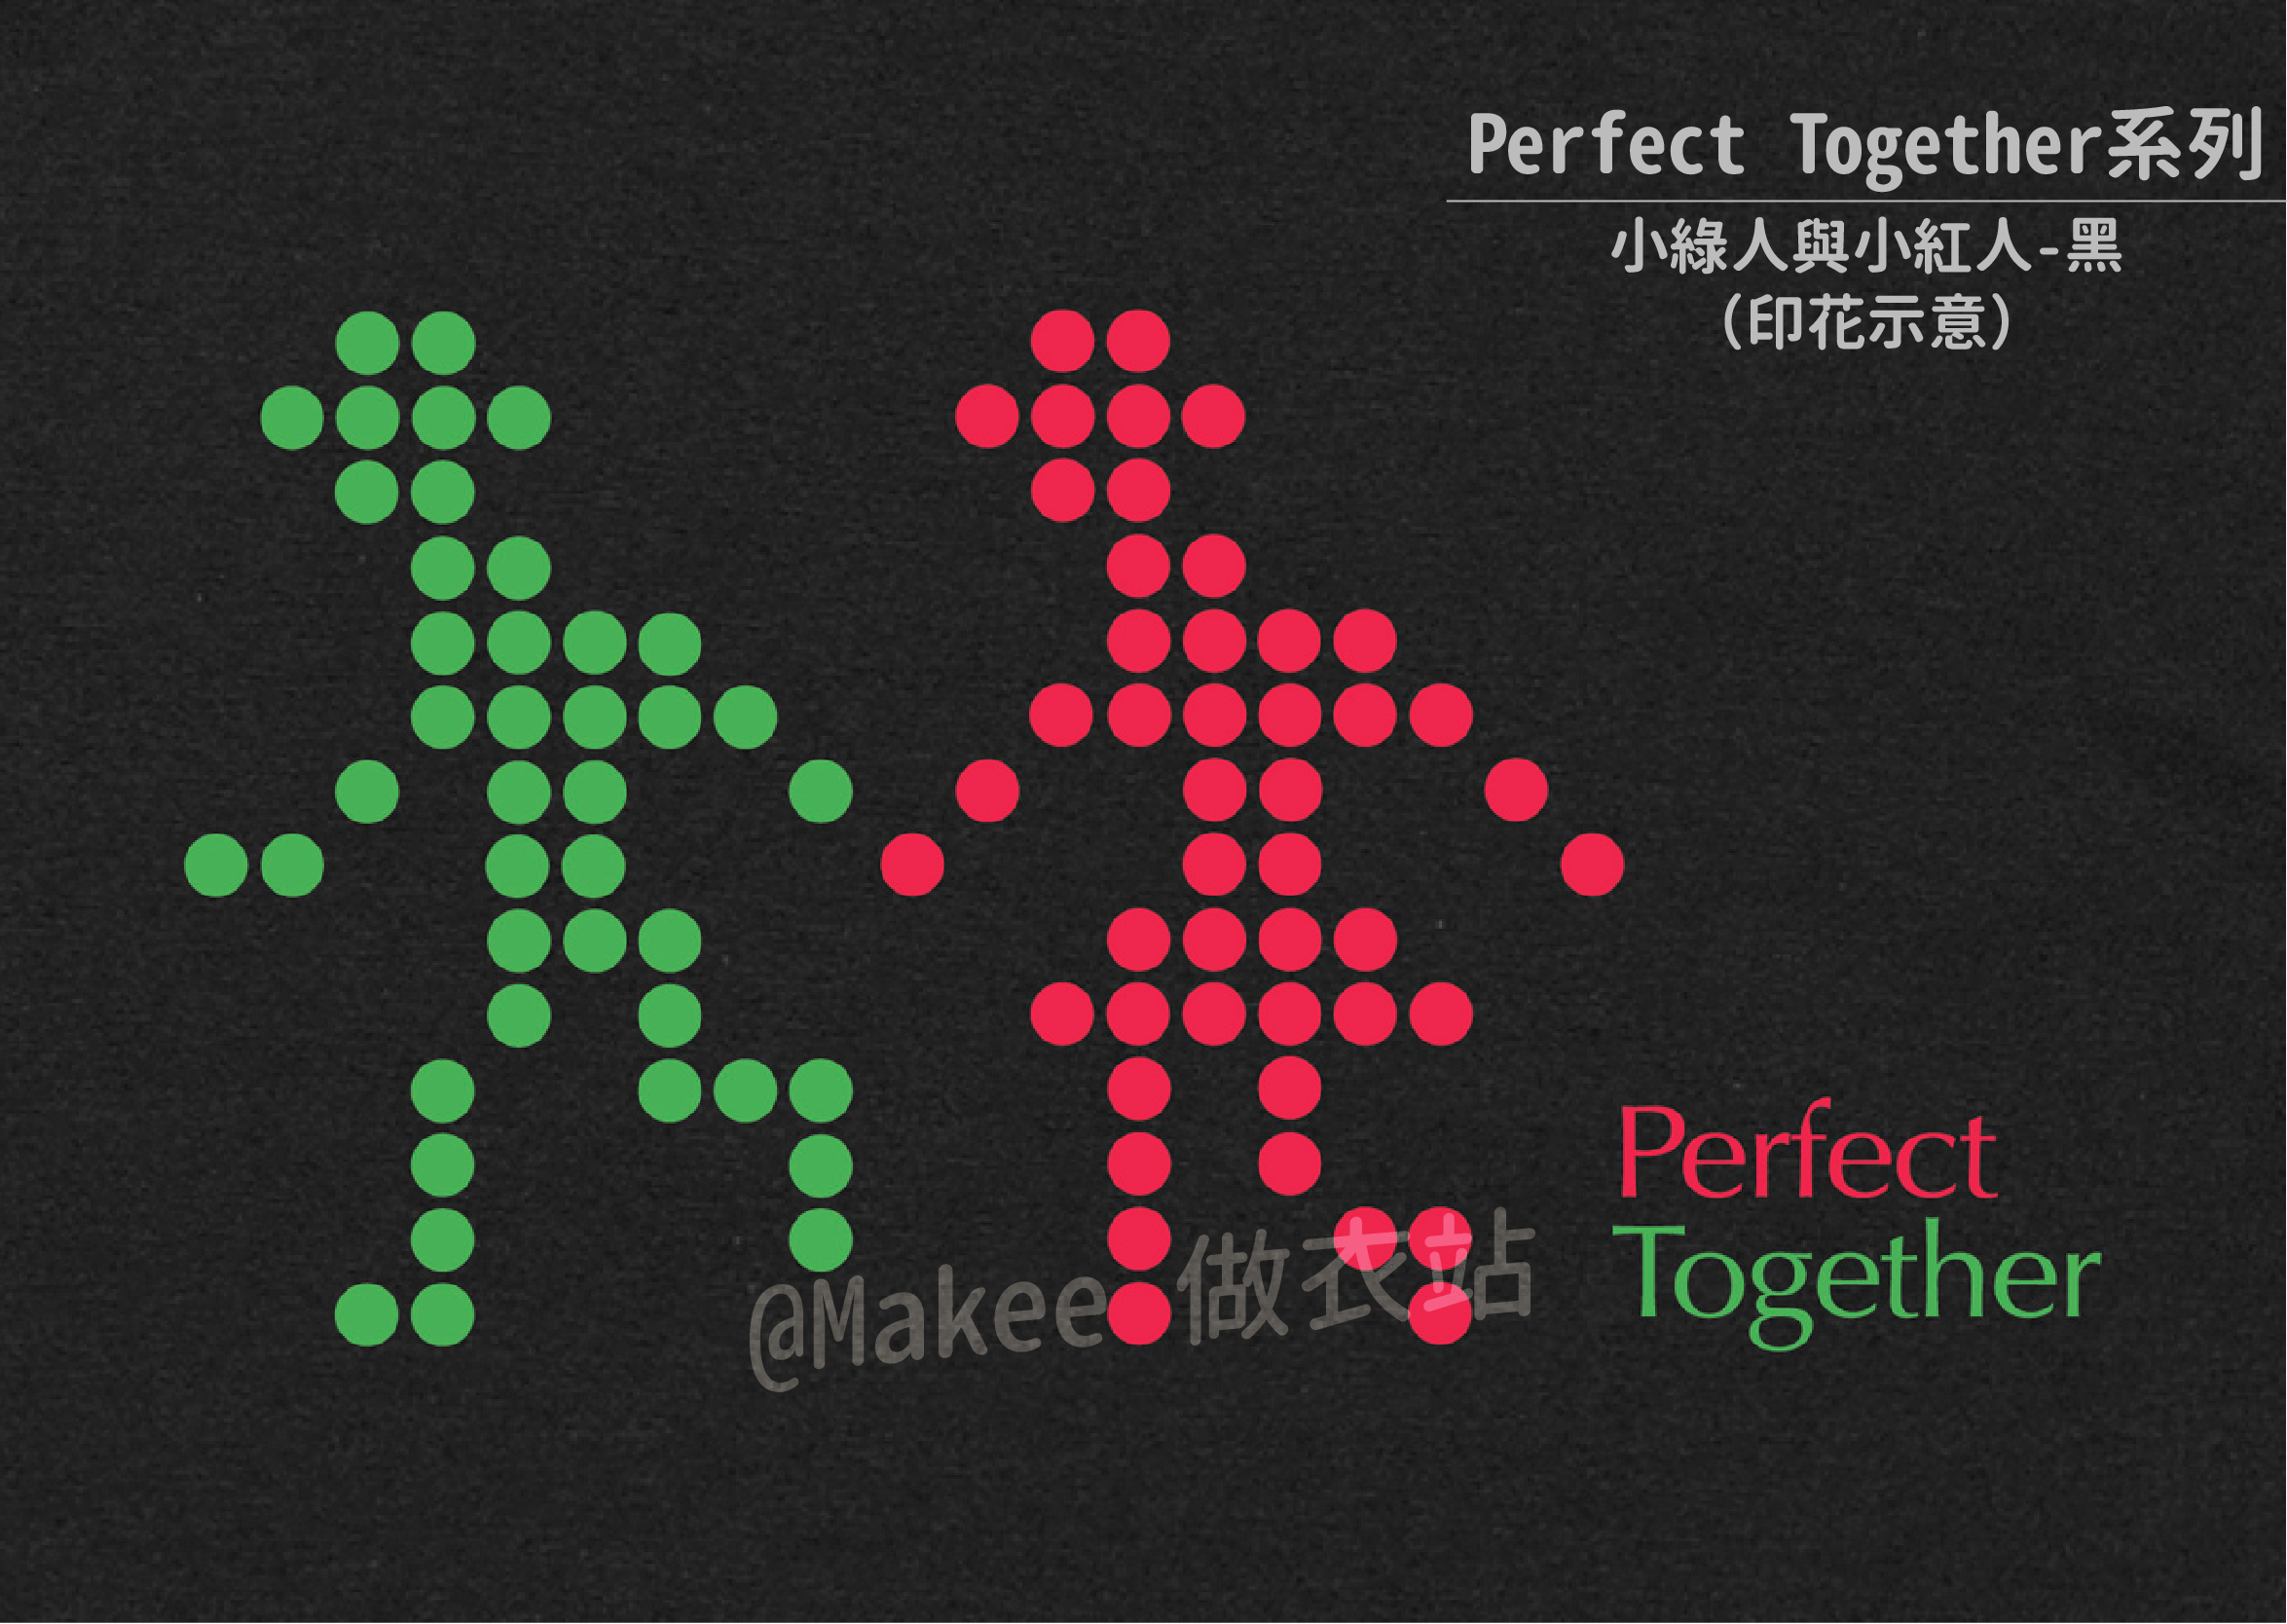 210201_做衣站-IP館_Perfect Together系列商品圖-25.png